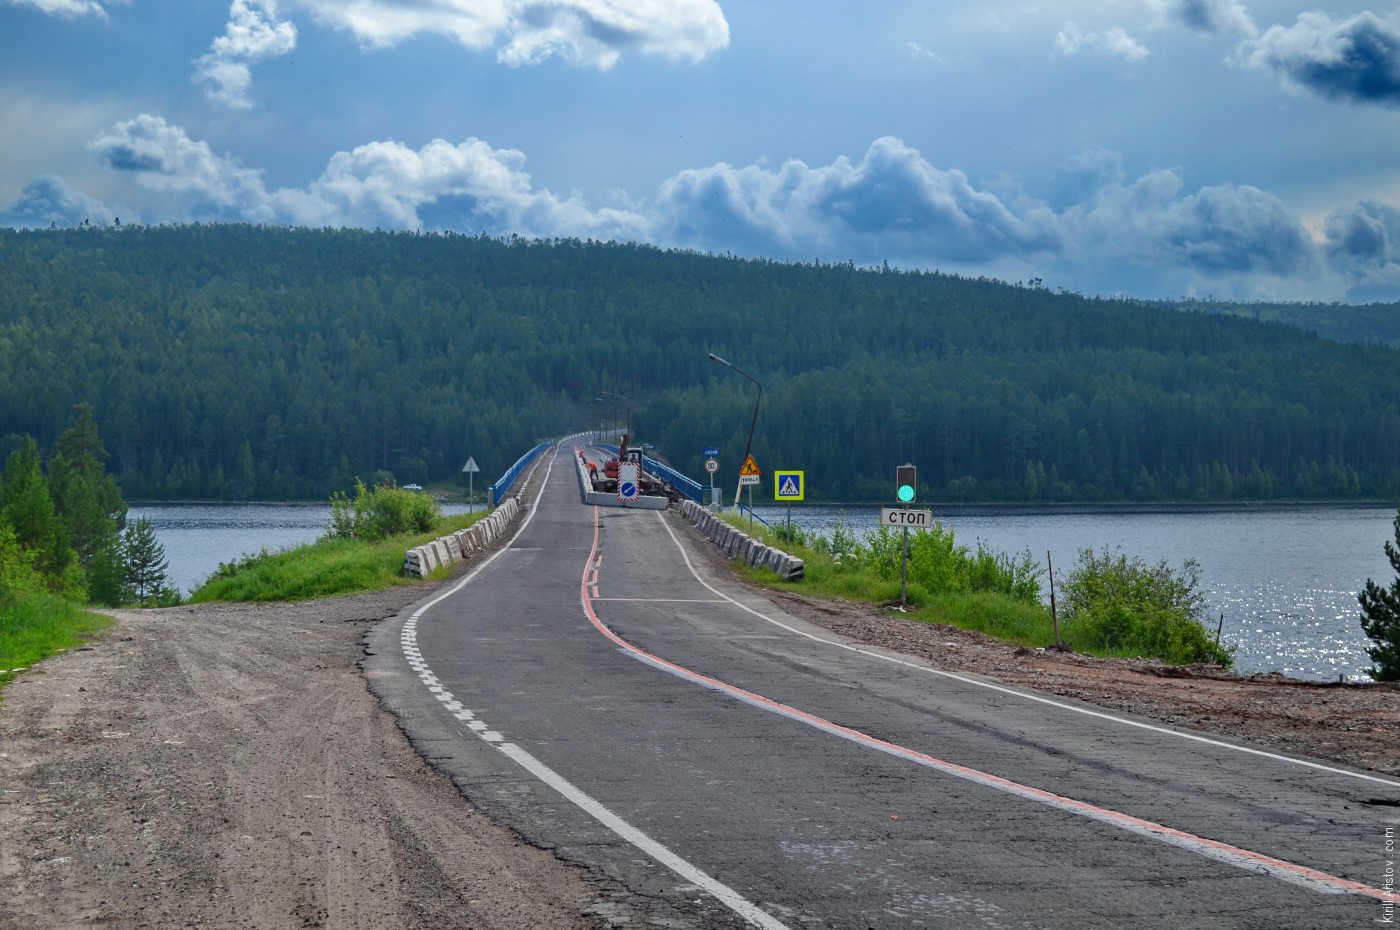 Автотрасса «Вилюй» пересекает воды реки Илим, Location: Река Илим, Илимский залив Усть-Илимского водохранилища.